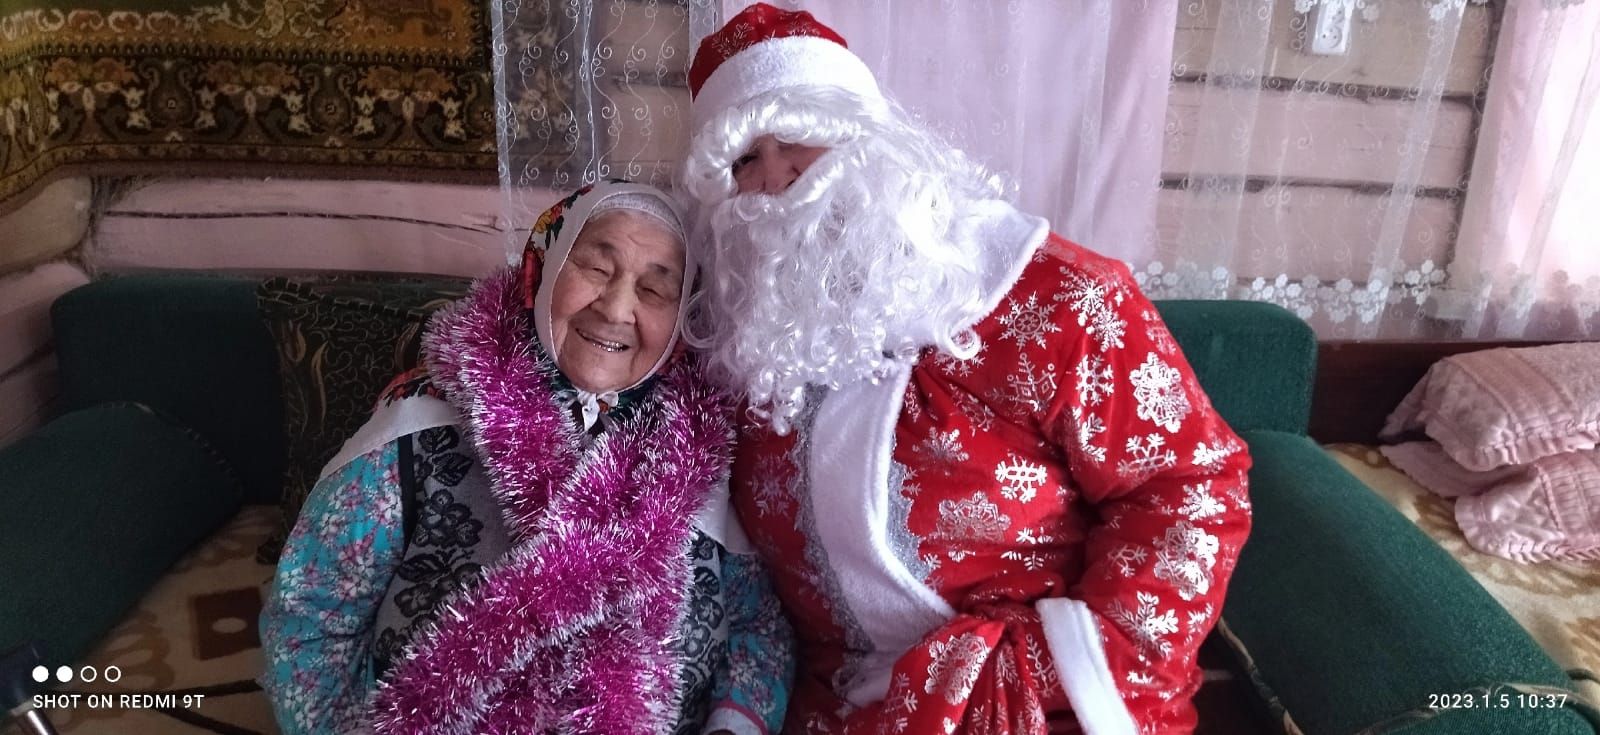 Дед Мороз и Снегурочка поздравили пожилых